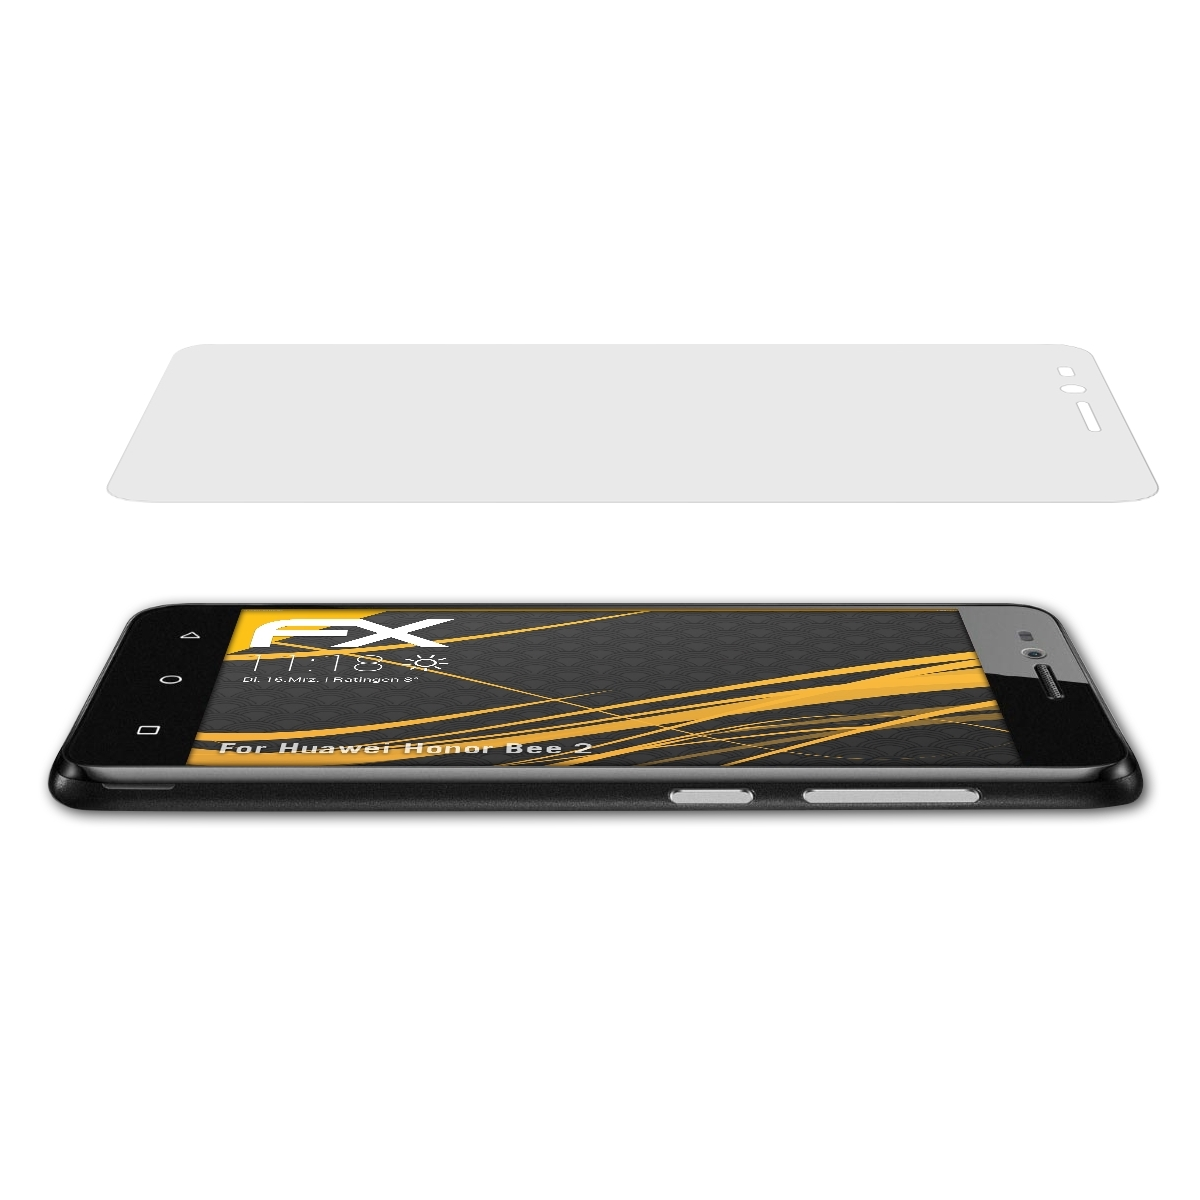 3x Honor FX-Antireflex Huawei Bee 2) ATFOLIX Displayschutz(für